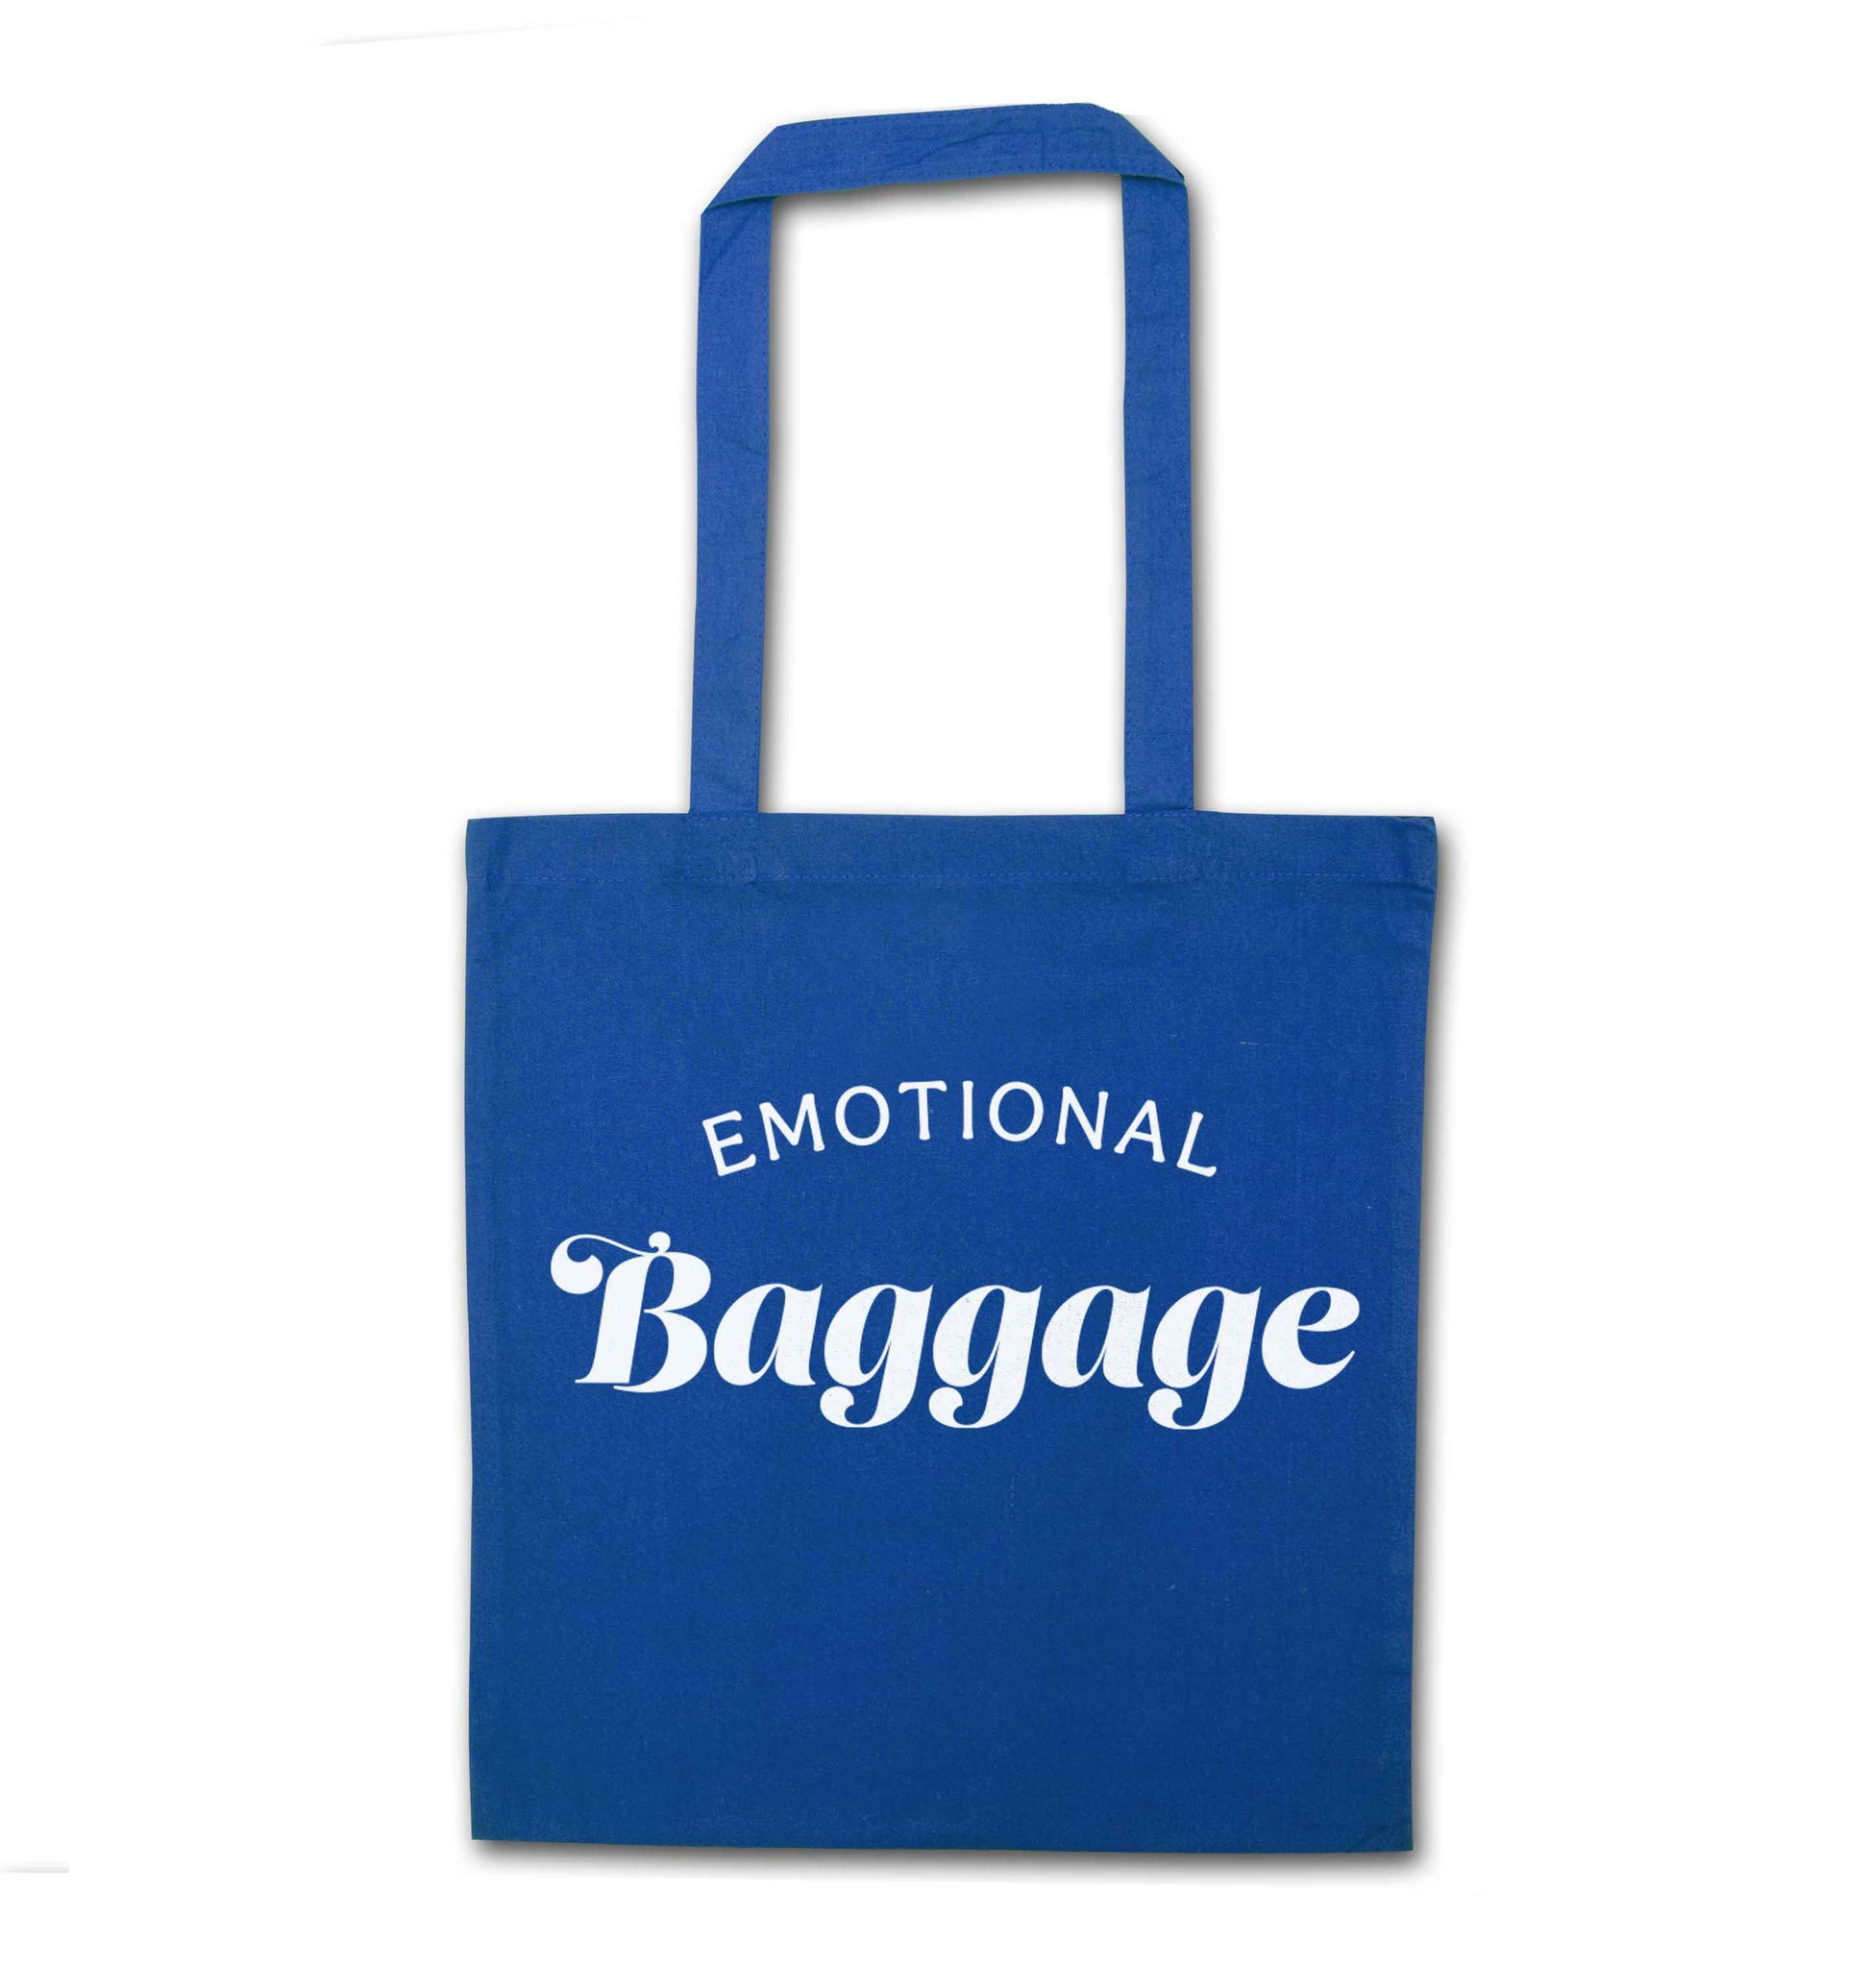 Emotional baggage blue tote bag